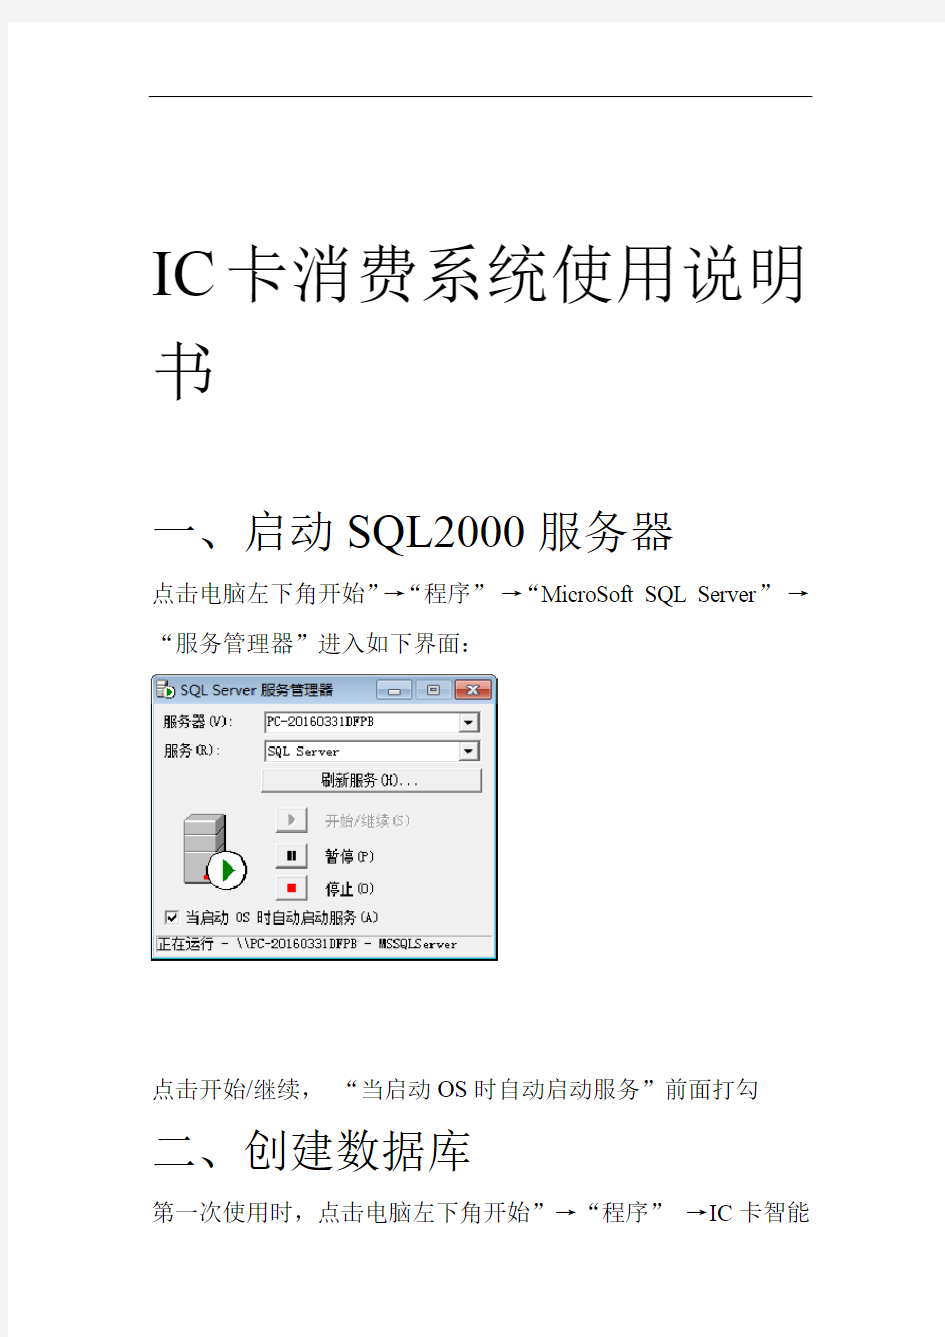 IC卡消费系统软件使用说明书